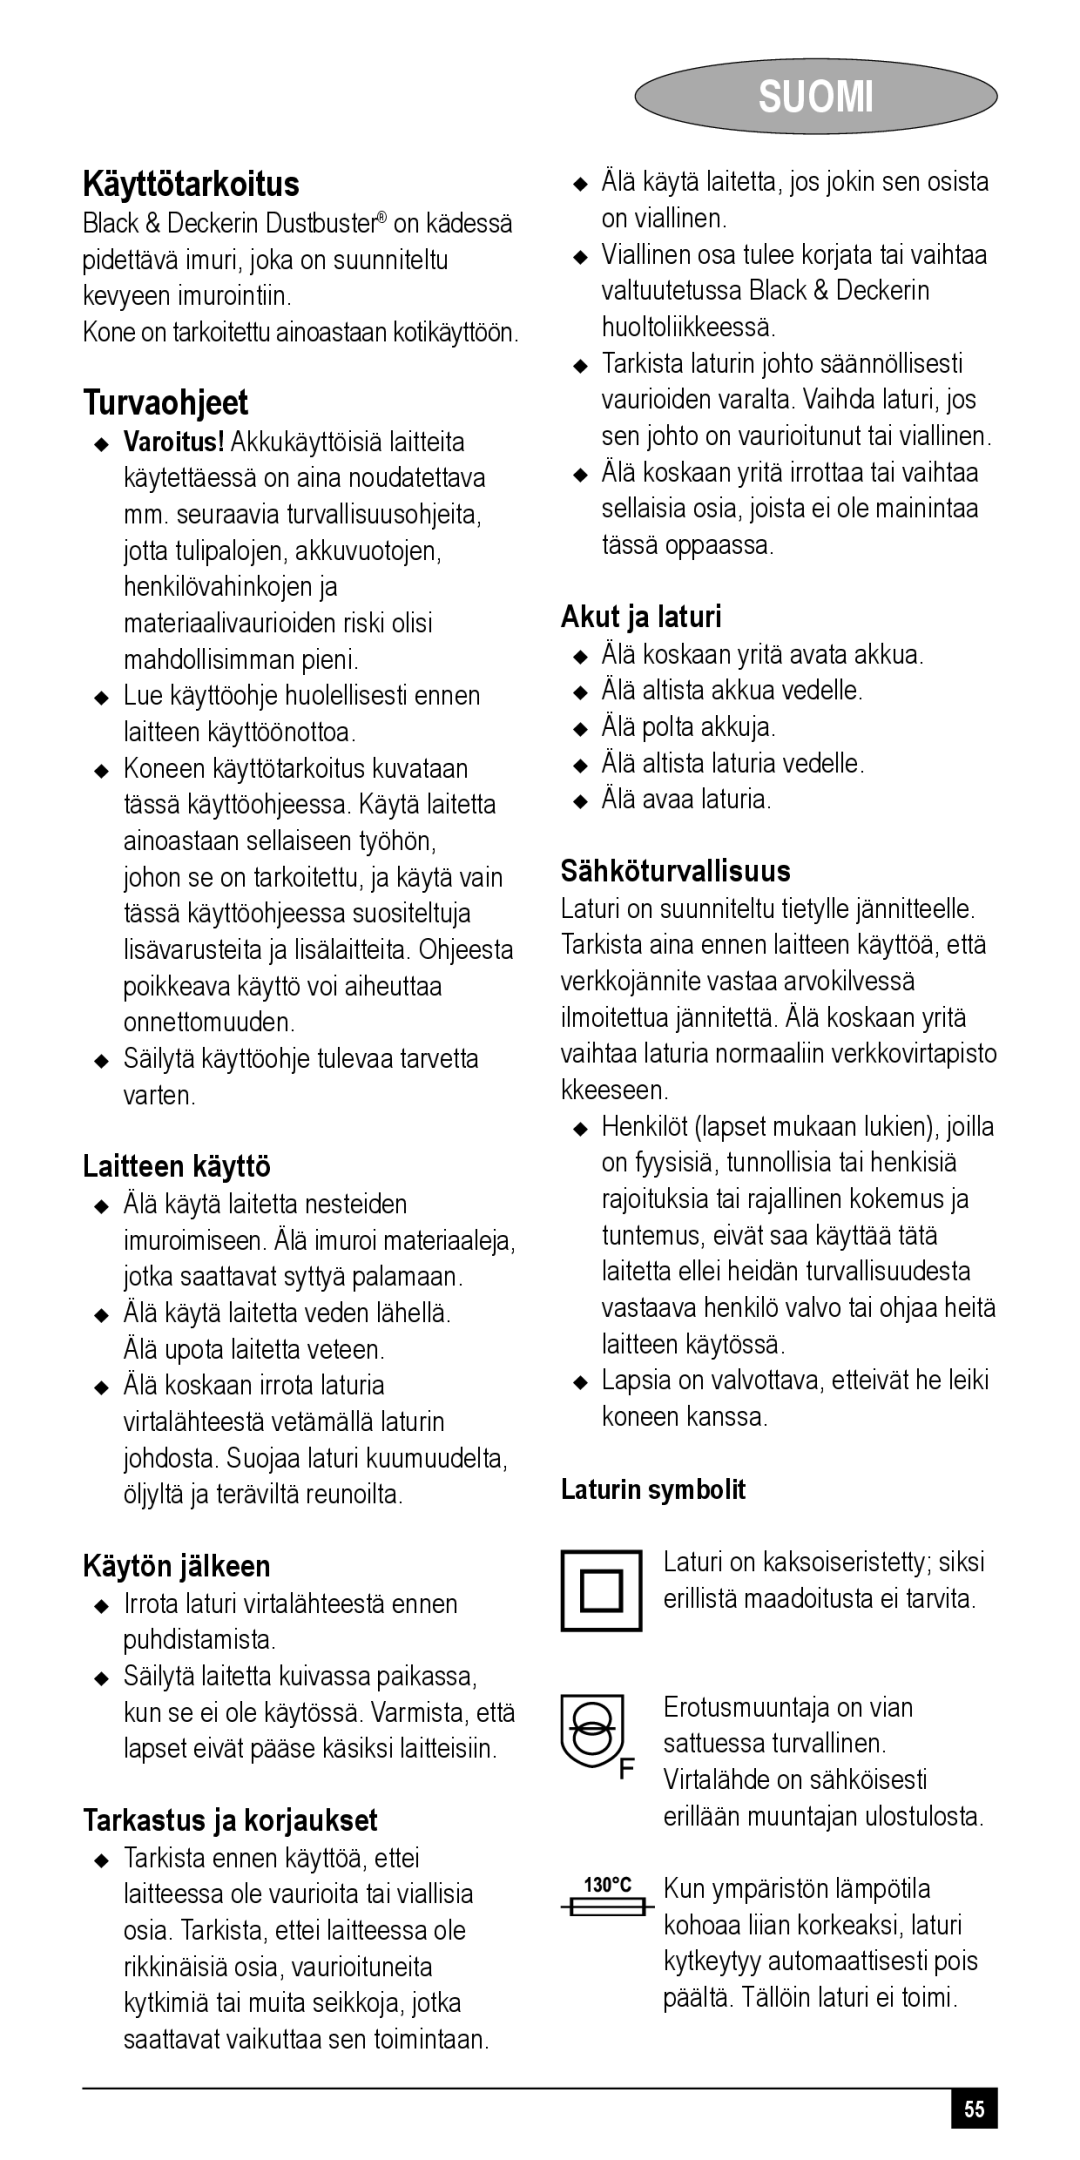 Black & Decker NV72XXY, NV48XXY, NV24XXY, NV36XXY, NV60XXY manual Suomi, Käyttötarkoitus, Turvaohjeet 